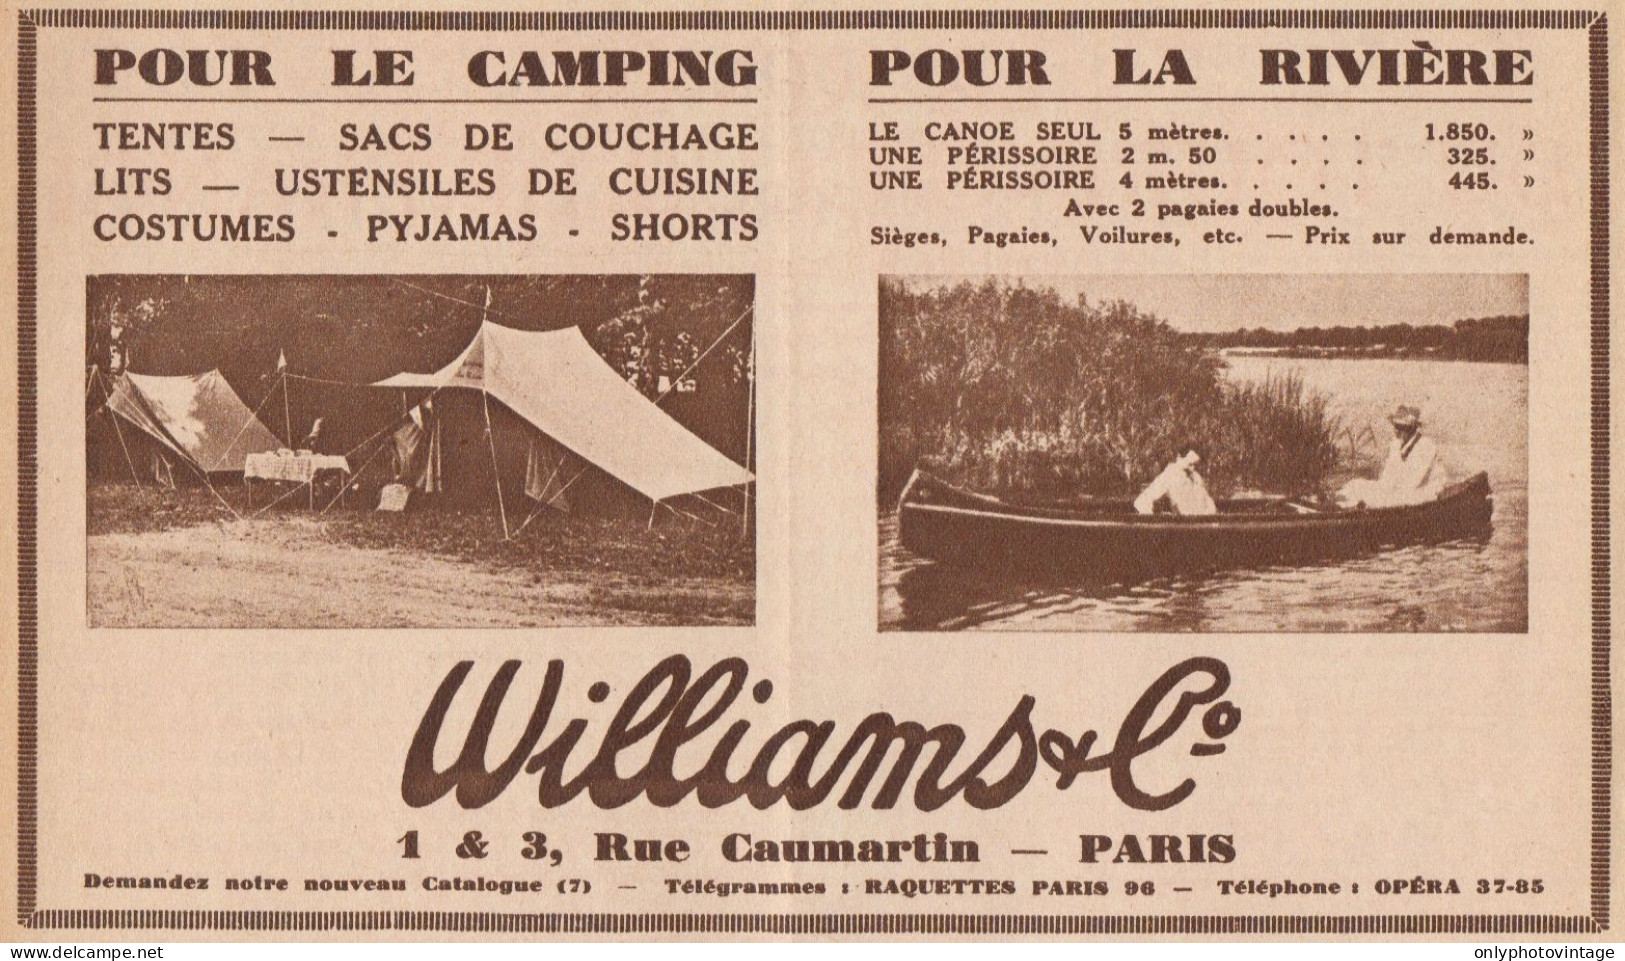 WILLIAMS Pour Le Camping & La Riviére - Pubblicità D'epoca - 1934 Old Ad - Publicités